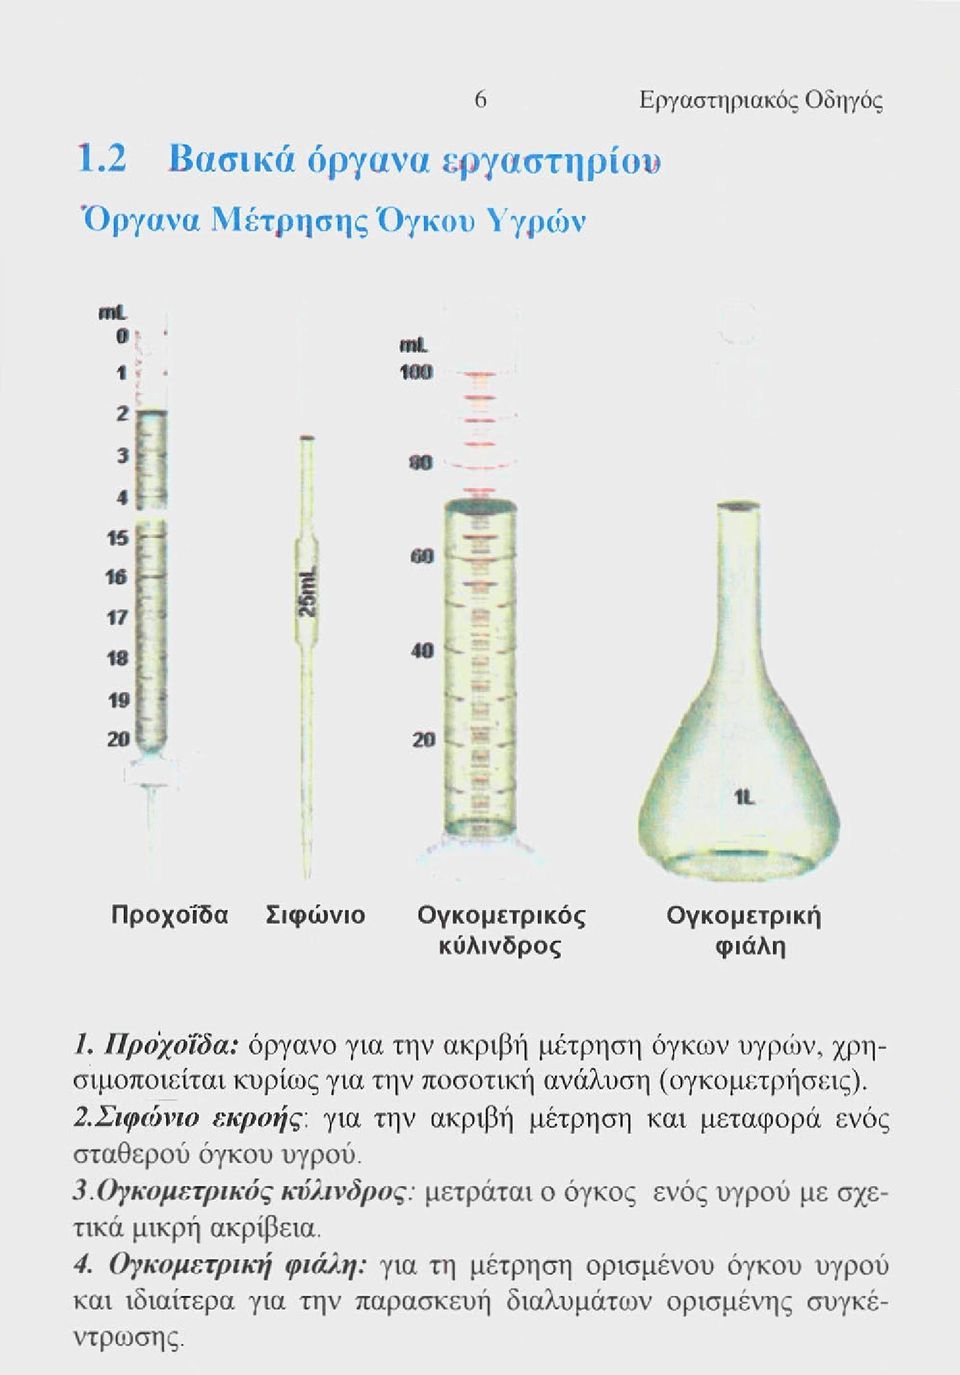 Πρόχο'ϊδα: όργανο για την ακριβή μέτρηση όγκων υγρών, χρησιμοποιείται κυρίως για την ποσοτική ανάλυση (ογκομετρήσεις). 2.